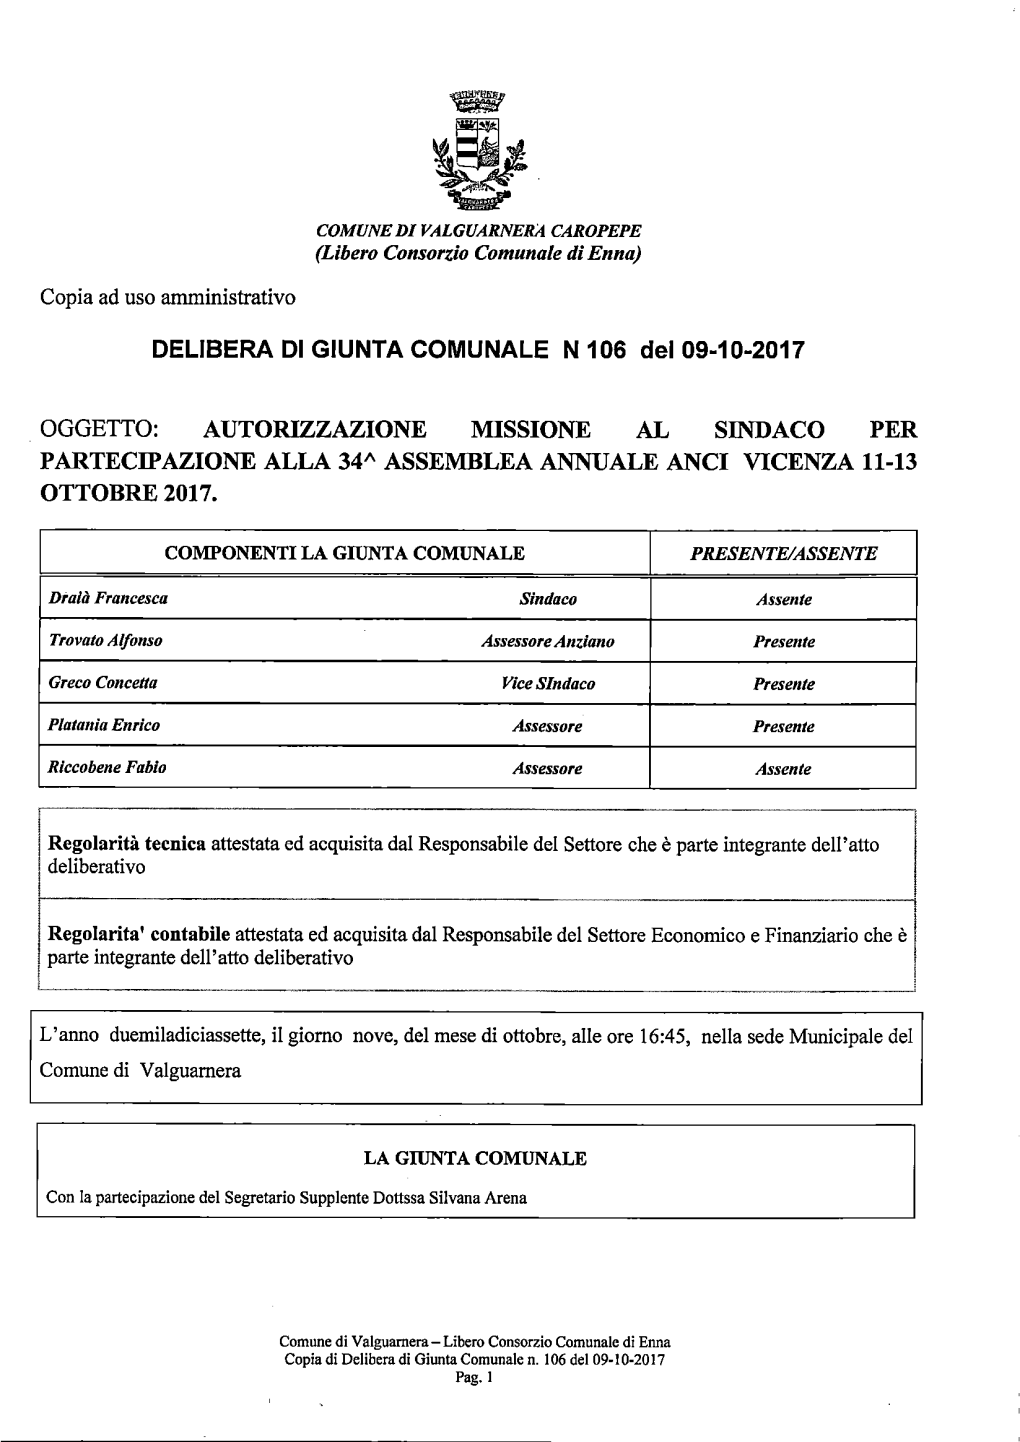 Oggetto: Autorizzazione Missione Al Sindaco Per Partecipazione Alla 34A Assemblea Annuale Anci Vicenza 11-13 Ottobre 2017. Delib